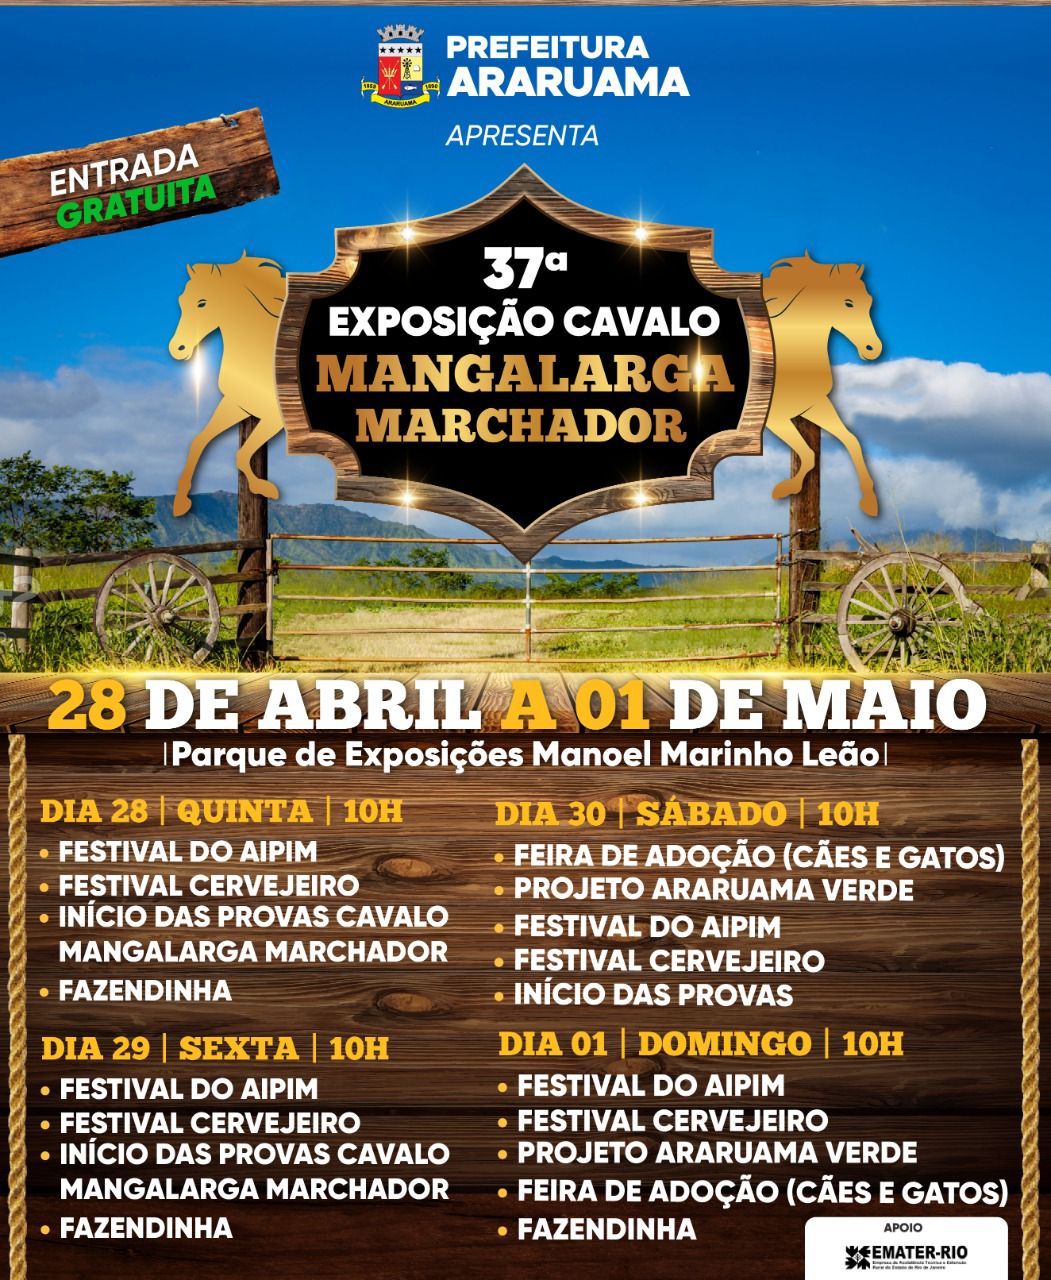 Prefeitura de Araruama vai realizar a 37ª Exposição do Cavalo Mangalarga Marchador